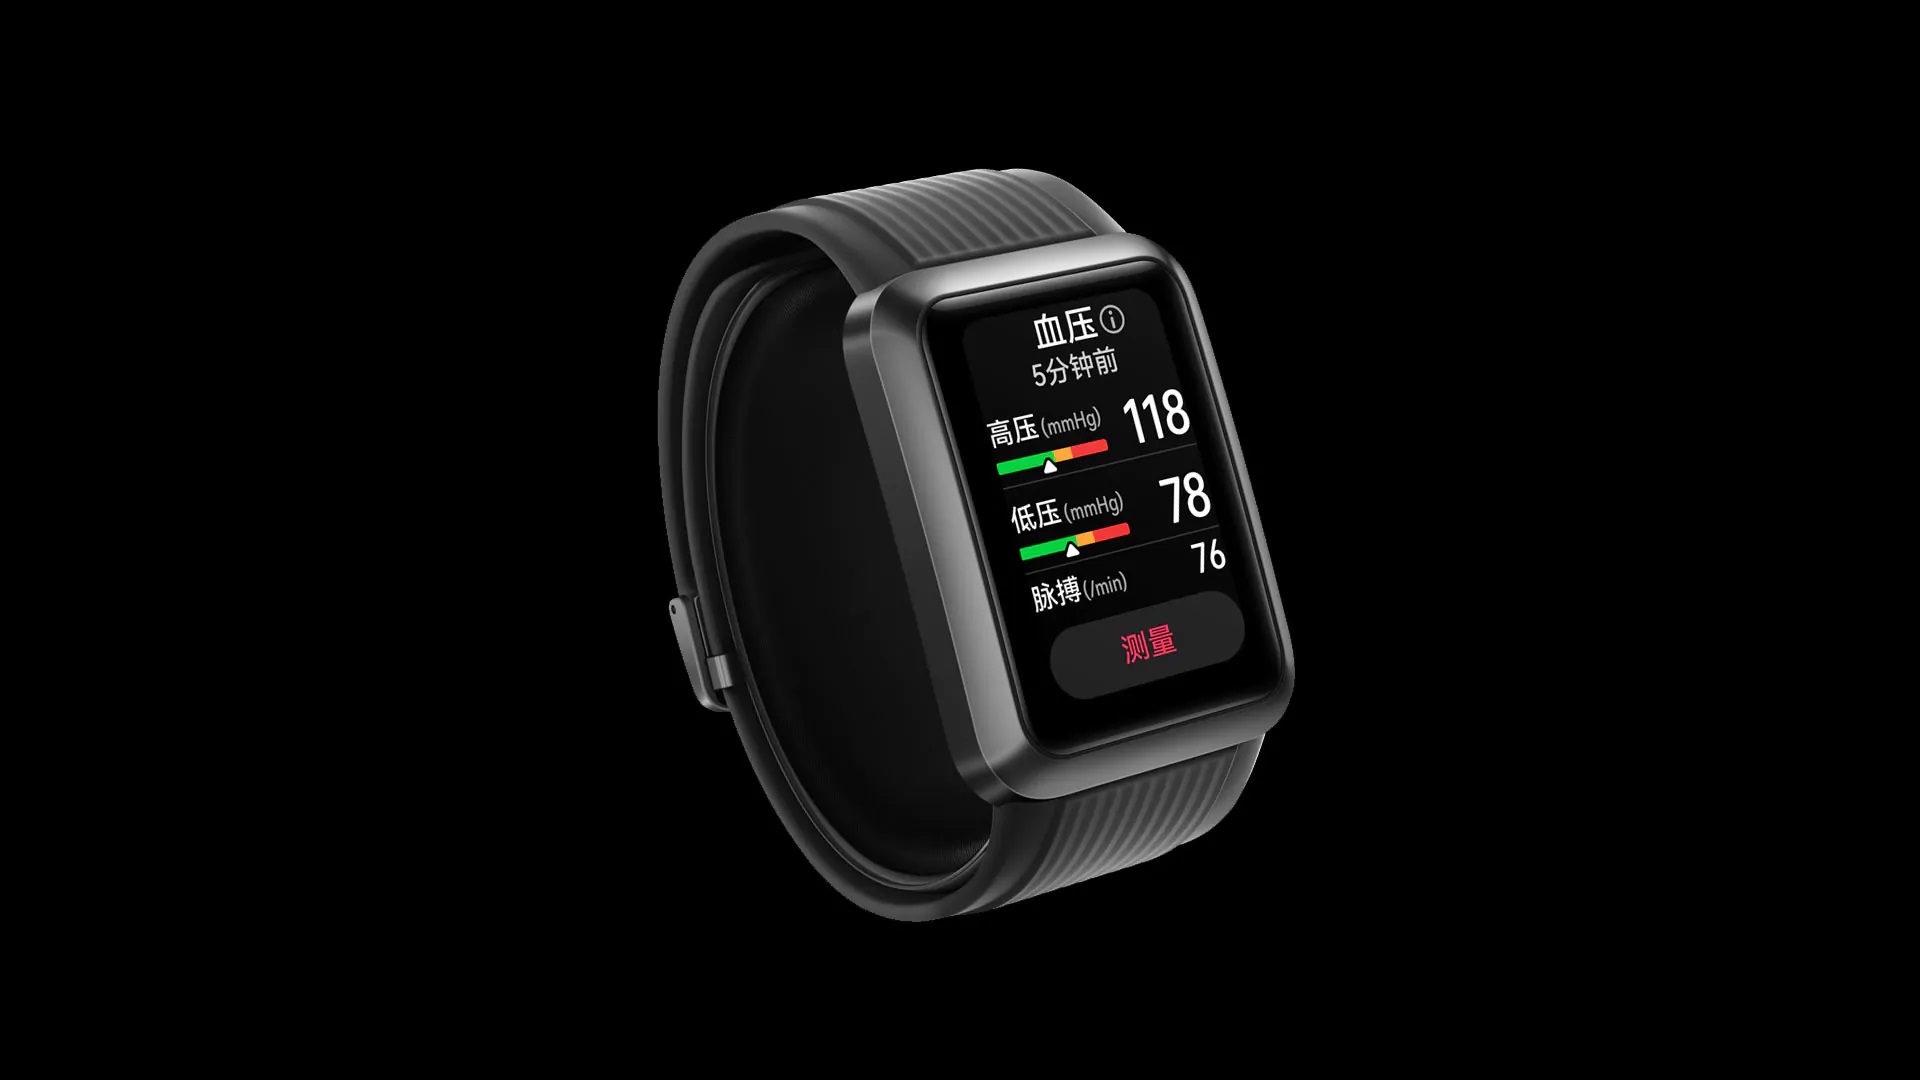 Ecco come sarà Huawei Watch D: nei render ufficiali è stato mostrato uno smartwatch che misura la pressione